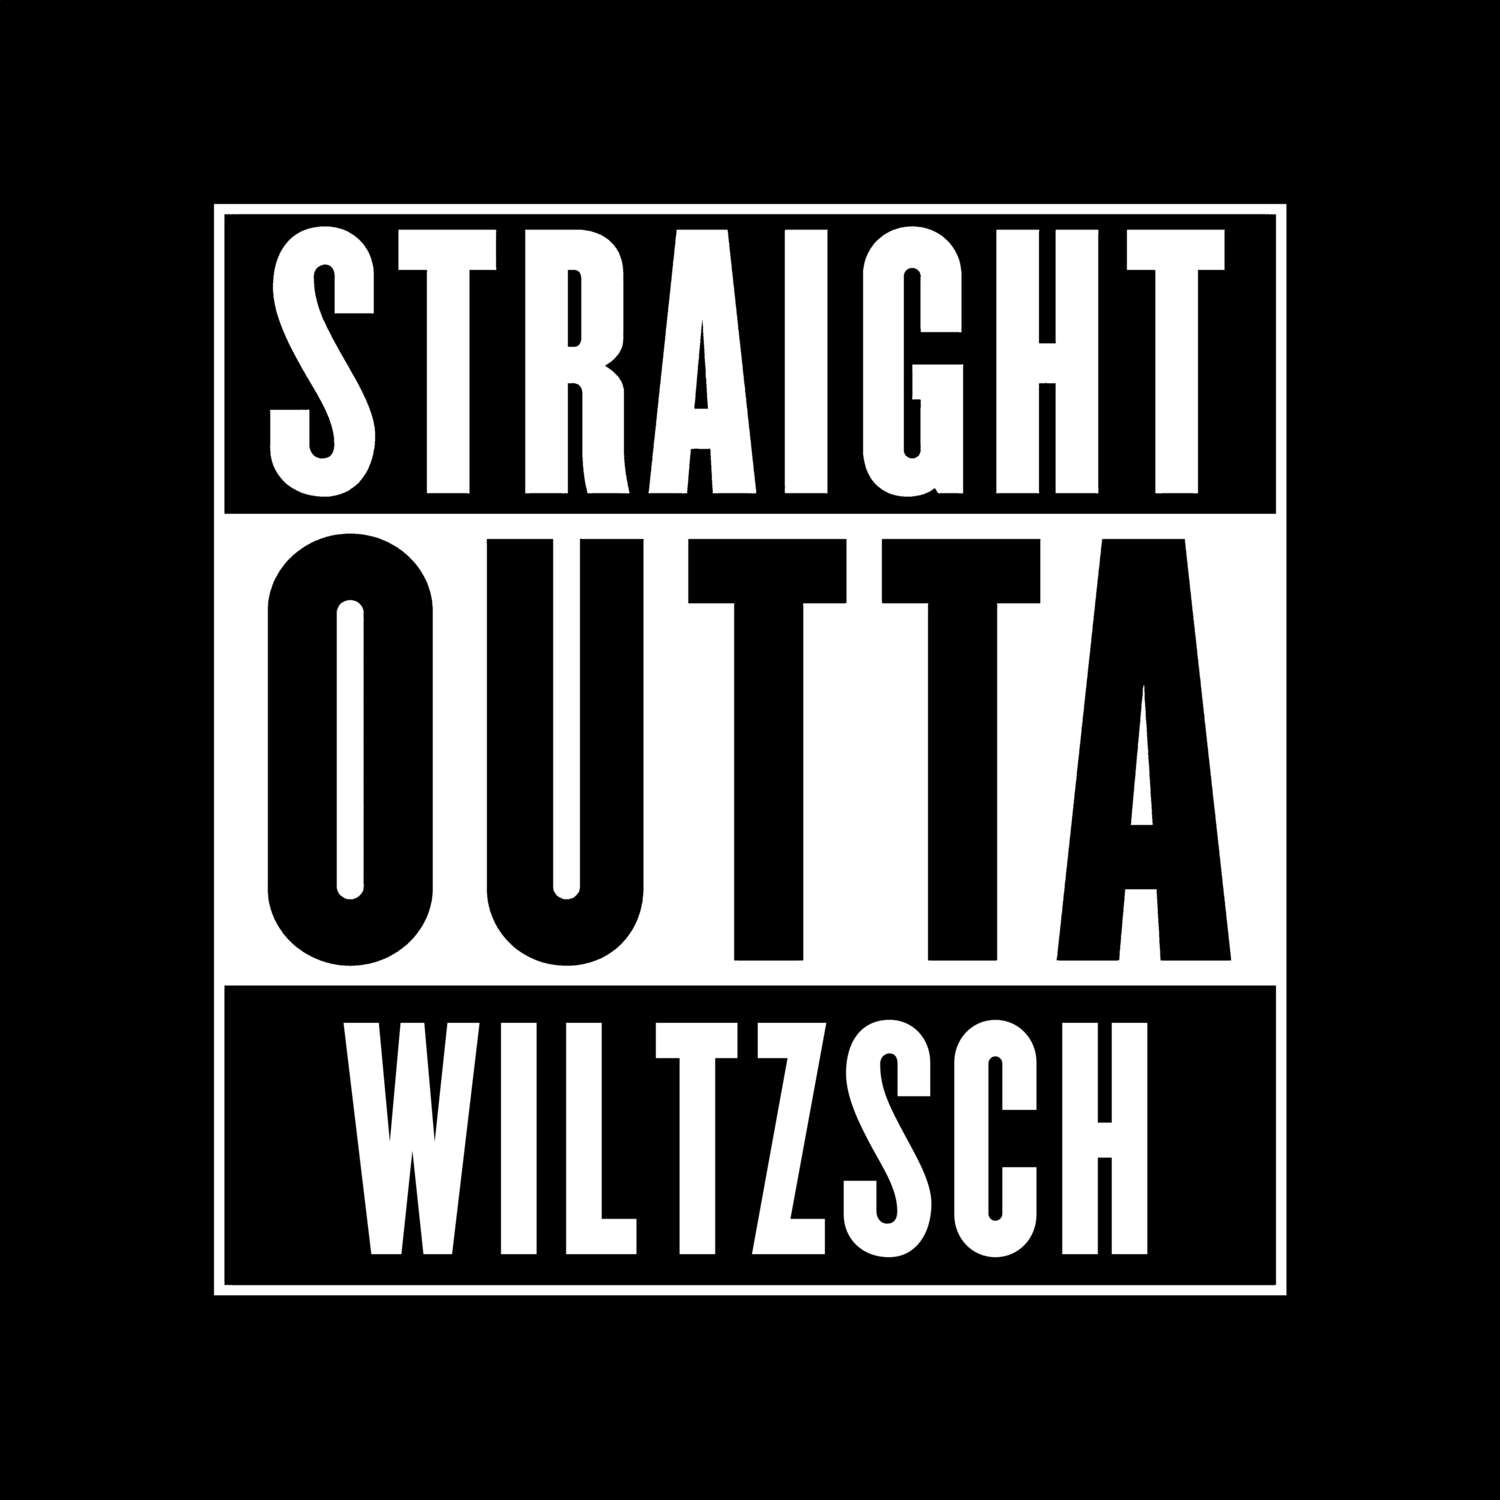 Wiltzsch T-Shirt »Straight Outta«